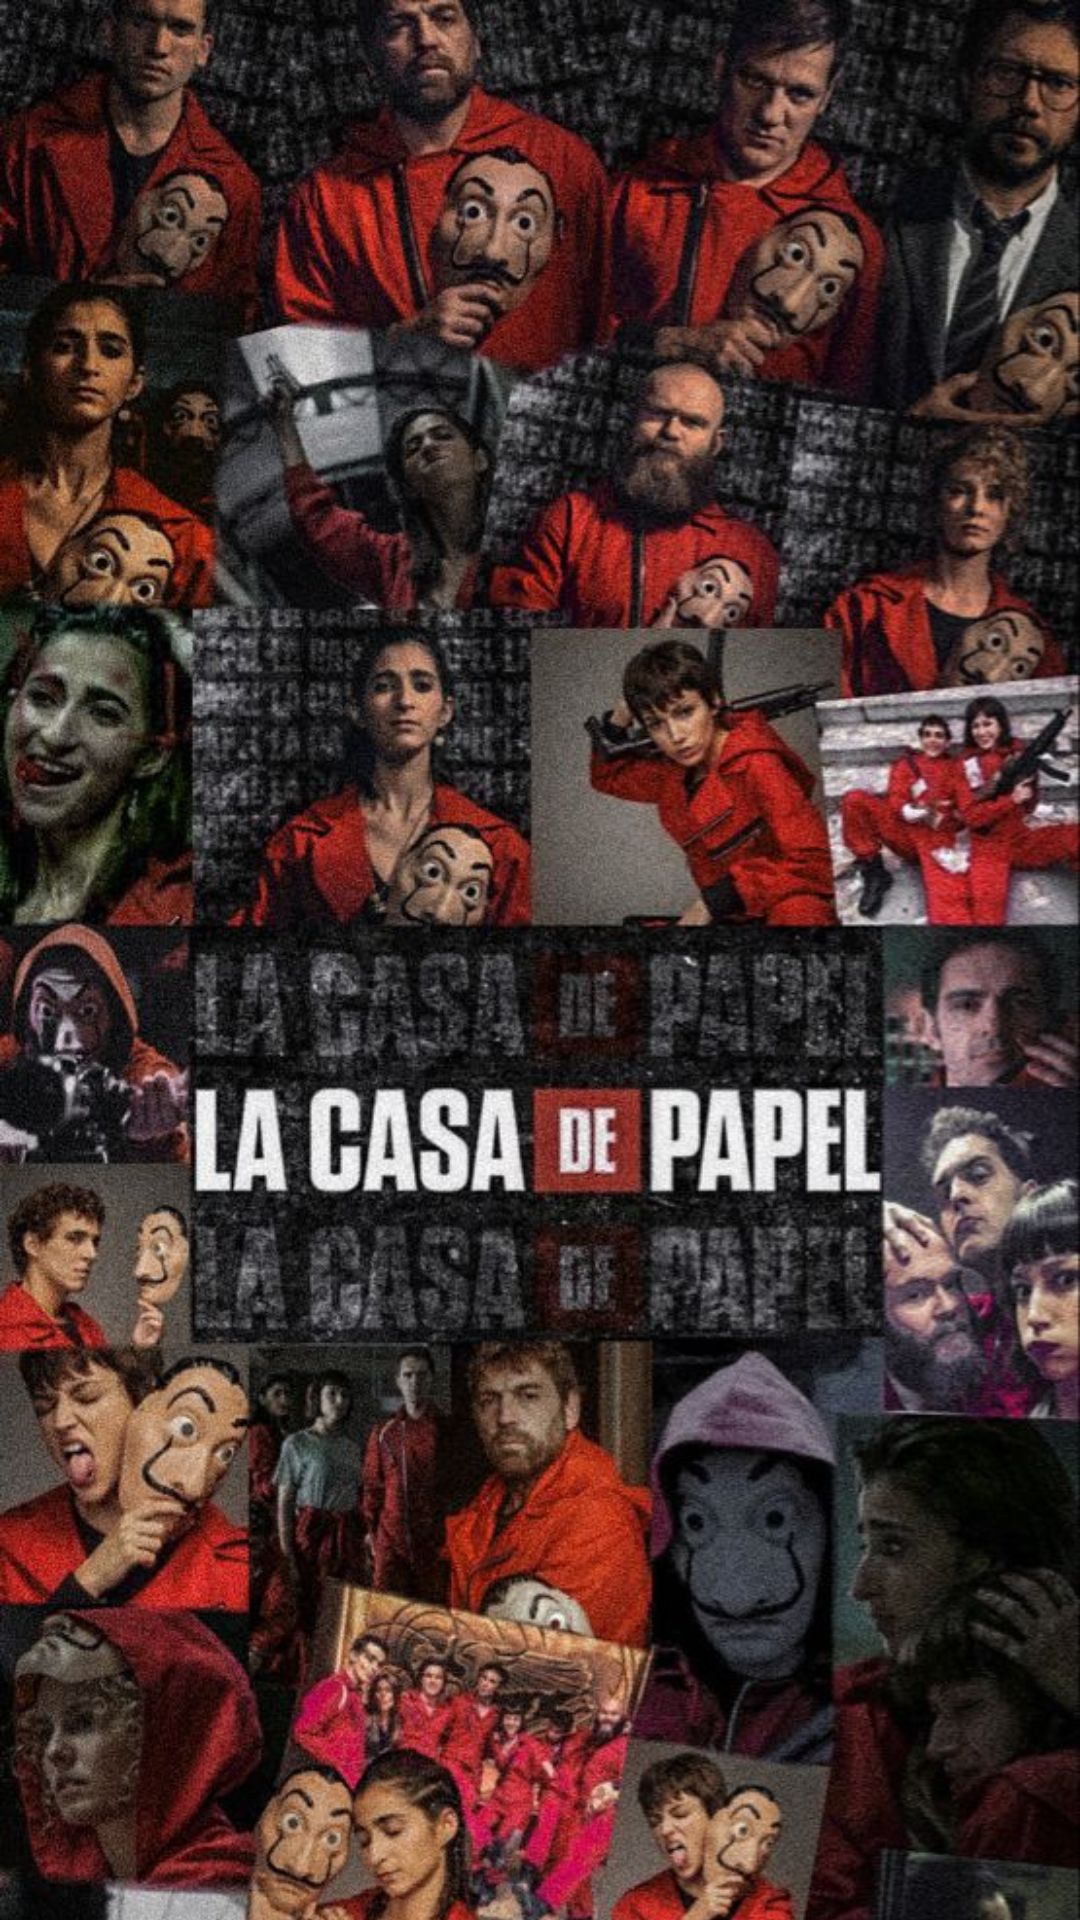 La Casa De Papel (Money Heist) Wallpapers